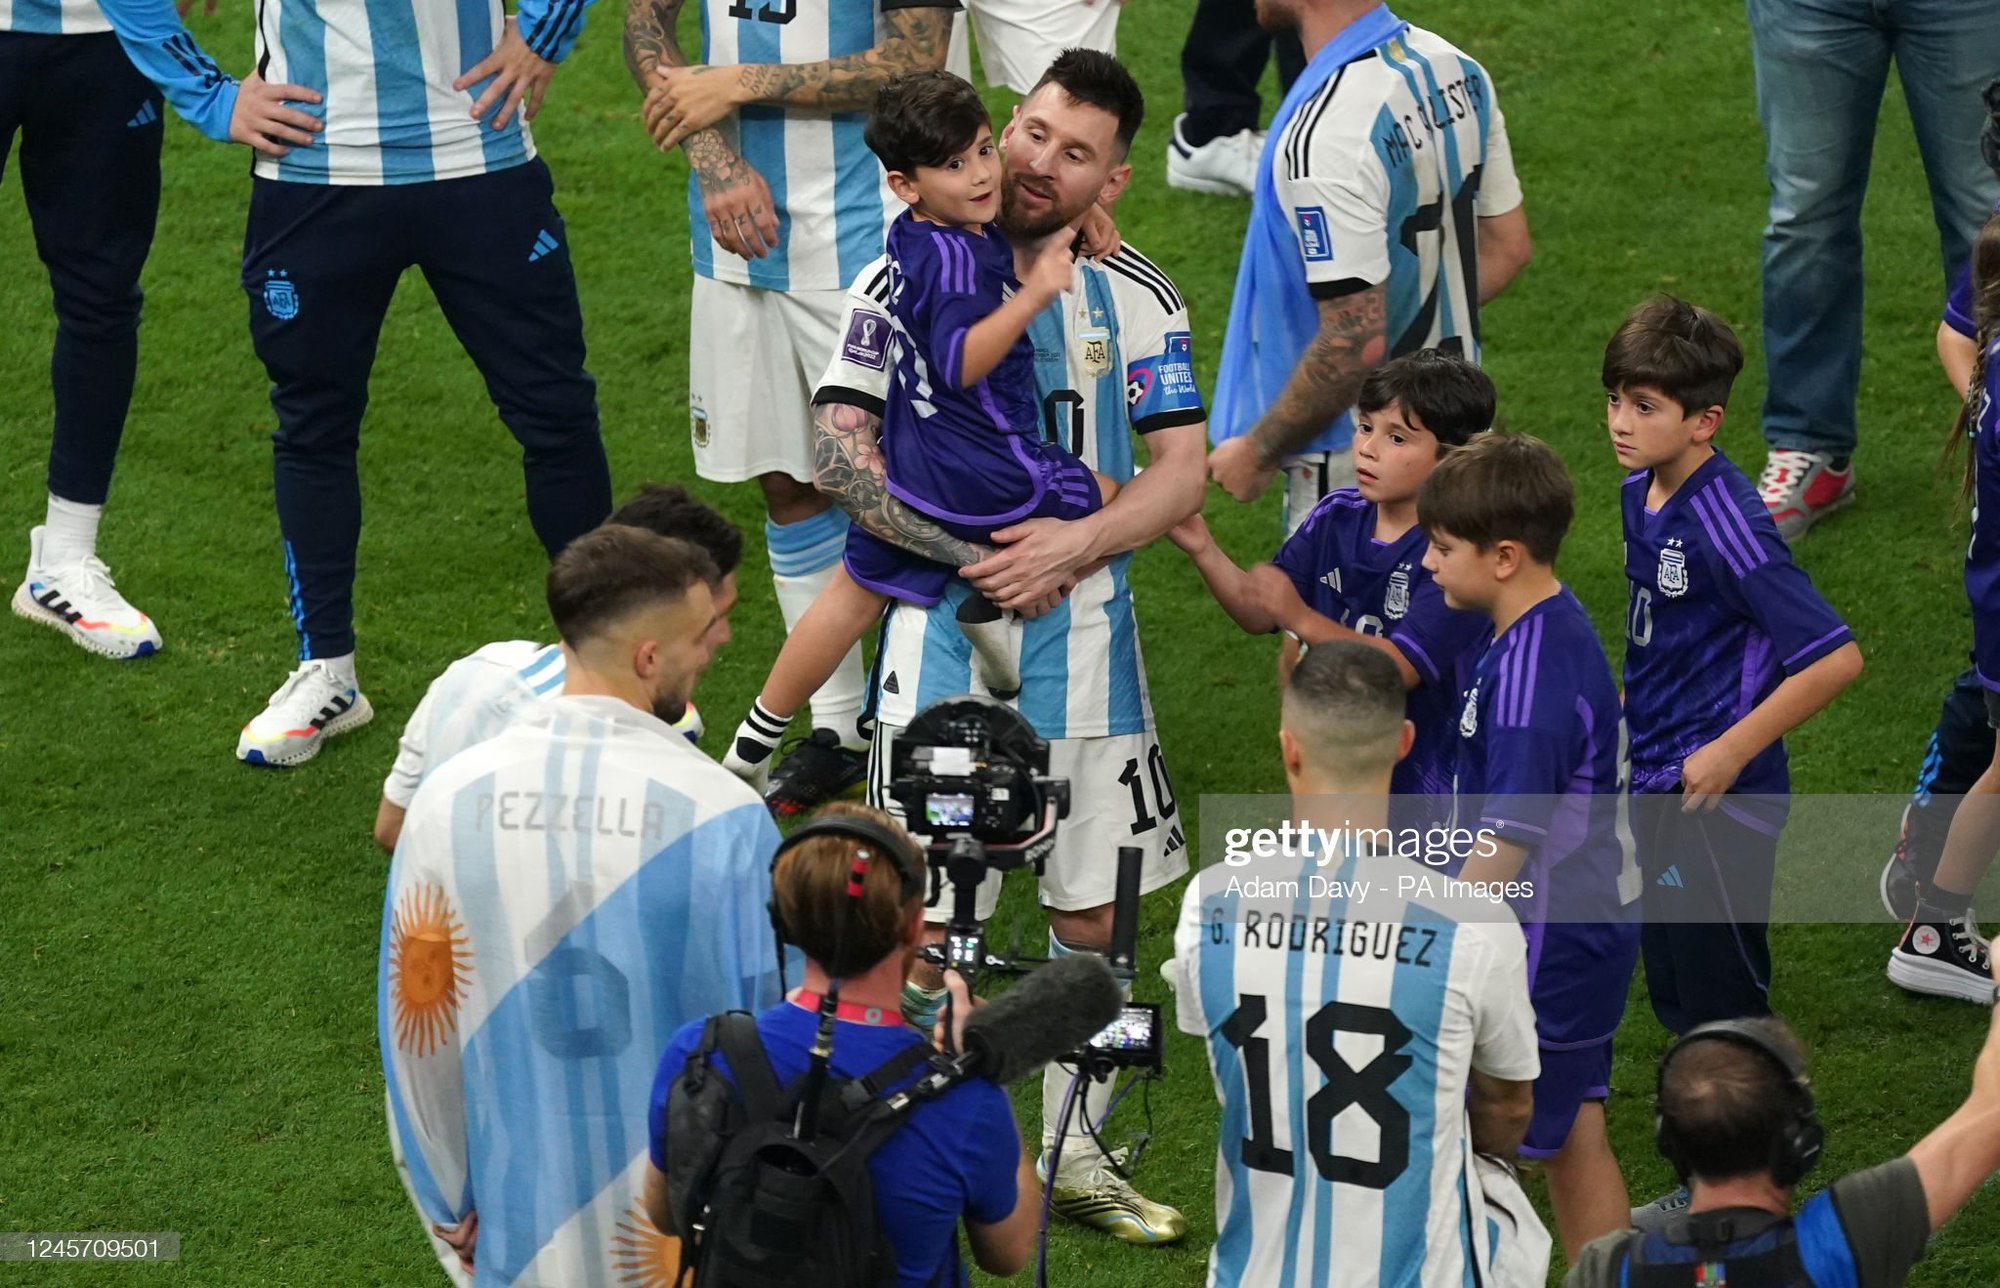 Cậu út nhà Messi không hiểu sao mọi người lại khóc khi ĐT Argentina vô địch World Cup - Ảnh 4.